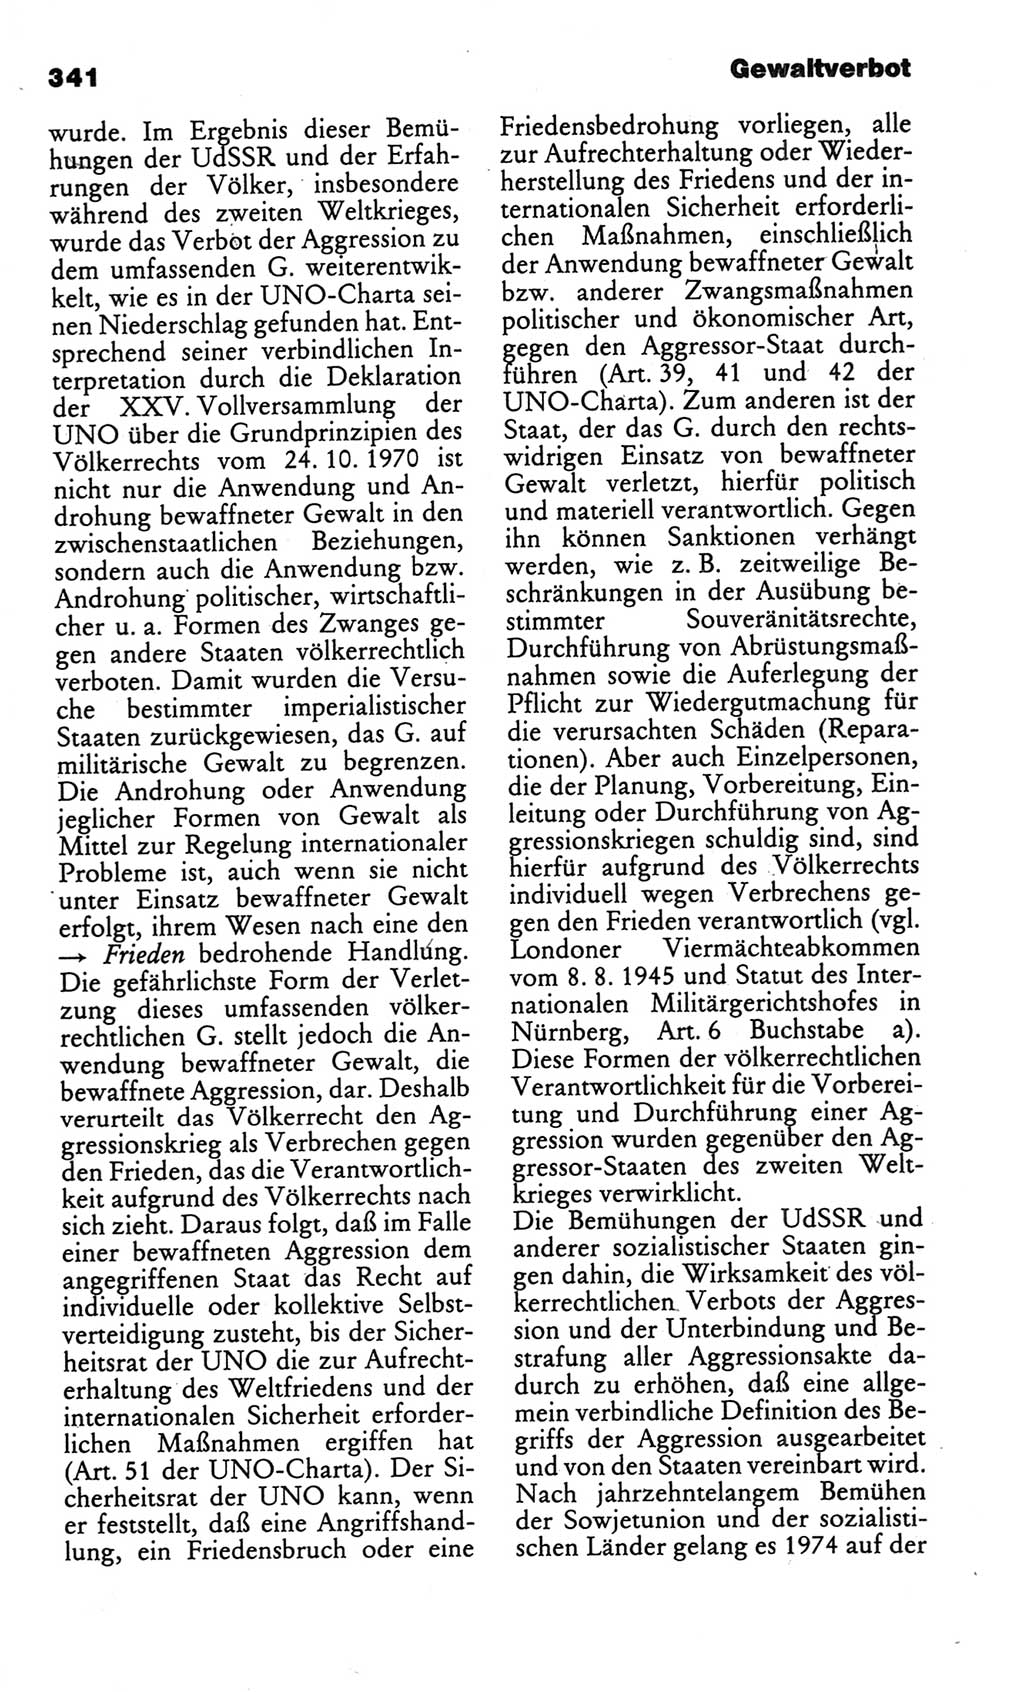 Kleines politisches Wörterbuch [Deutsche Demokratische Republik (DDR)] 1986, Seite 341 (Kl. pol. Wb. DDR 1986, S. 341)